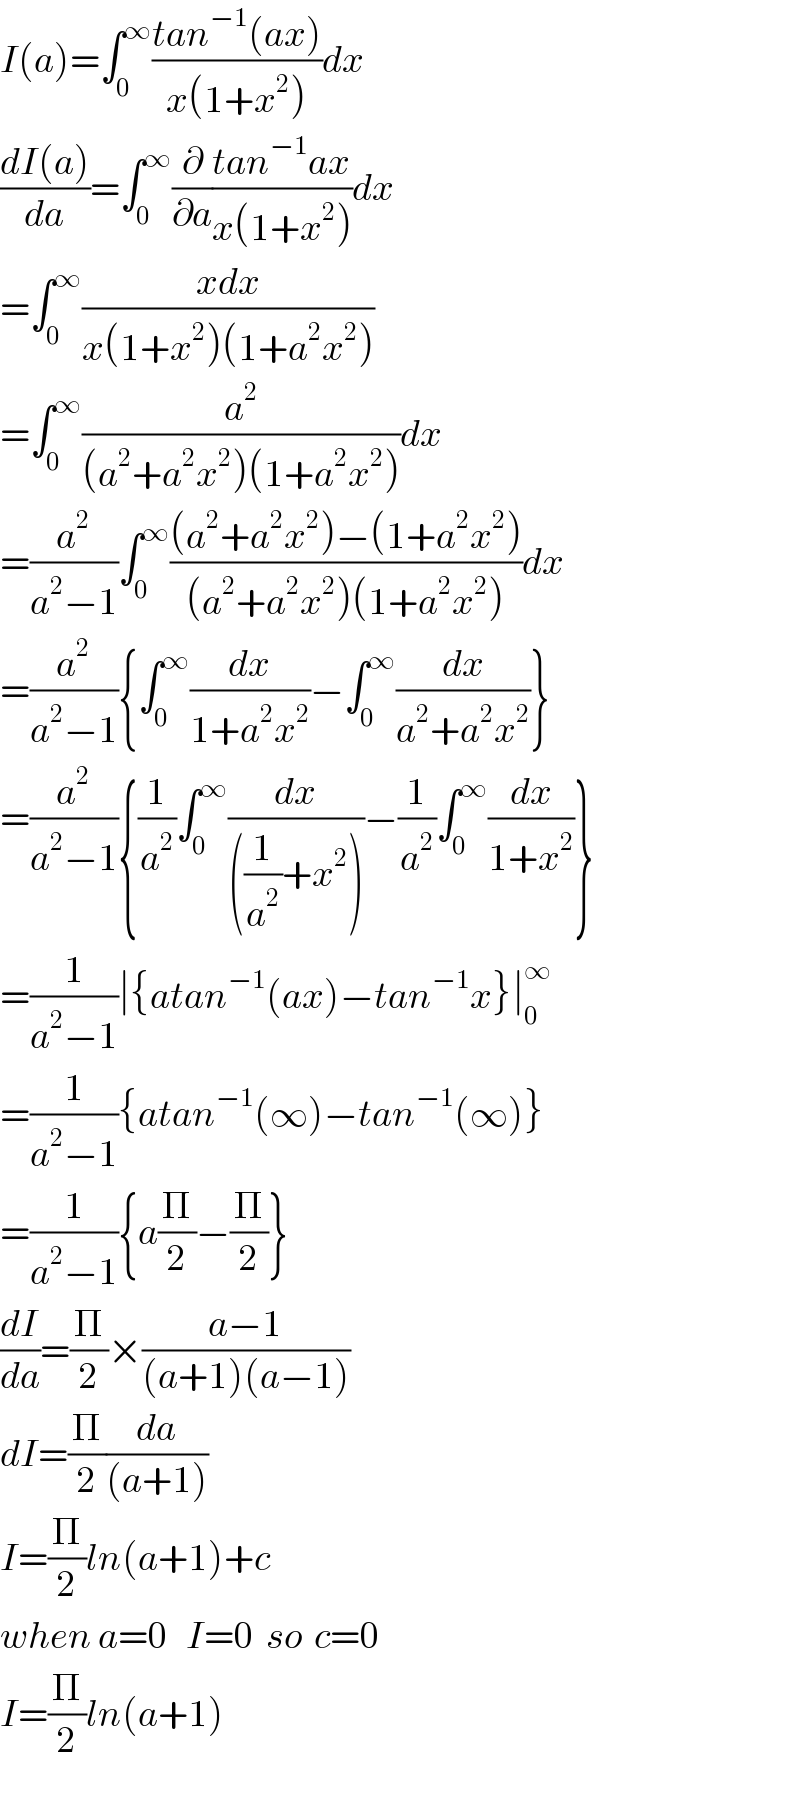 I(a)=∫_0 ^∞ ((tan^(−1) (ax))/(x(1+x^2 )))dx  ((dI(a))/da)=∫_0 ^∞ (∂/∂a)((tan^(−1) ax)/(x(1+x^2 )))dx  =∫_0 ^∞ ((xdx)/(x(1+x^2 )(1+a^2 x^2 )))  =∫_0 ^∞ (a^2 /((a^2 +a^2 x^2 )(1+a^2 x^2 )))dx  =(a^2 /(a^2 −1))∫_0 ^∞ (((a^2 +a^2 x^2 )−(1+a^2 x^2 ))/((a^2 +a^2 x^2 )(1+a^2 x^2 )))dx  =(a^2 /(a^2 −1)){∫_0 ^∞ (dx/(1+a^2 x^2 ))−∫_0 ^∞ (dx/(a^2 +a^2 x^2 ))}  =(a^2 /(a^2 −1)){(1/a^2 )∫_0 ^∞ (dx/(((1/a^2 )+x^2 )))−(1/a^2 )∫_0 ^∞ (dx/(1+x^2 ))}  =(1/(a^2 −1))∣{atan^(−1) (ax)−tan^(−1) x}∣_0 ^∞   =(1/(a^2 −1)){atan^(−1) (∞)−tan^(−1) (∞)}  =(1/(a^2 −1)){a(Π/2)−(Π/2)}  (dI/da)=(Π/2)×((a−1)/((a+1)(a−1)))  dI=(Π/2)(da/((a+1)))  I=(Π/2)ln(a+1)+c  when a=0   I=0  so  c=0  I=(Π/2)ln(a+1)  